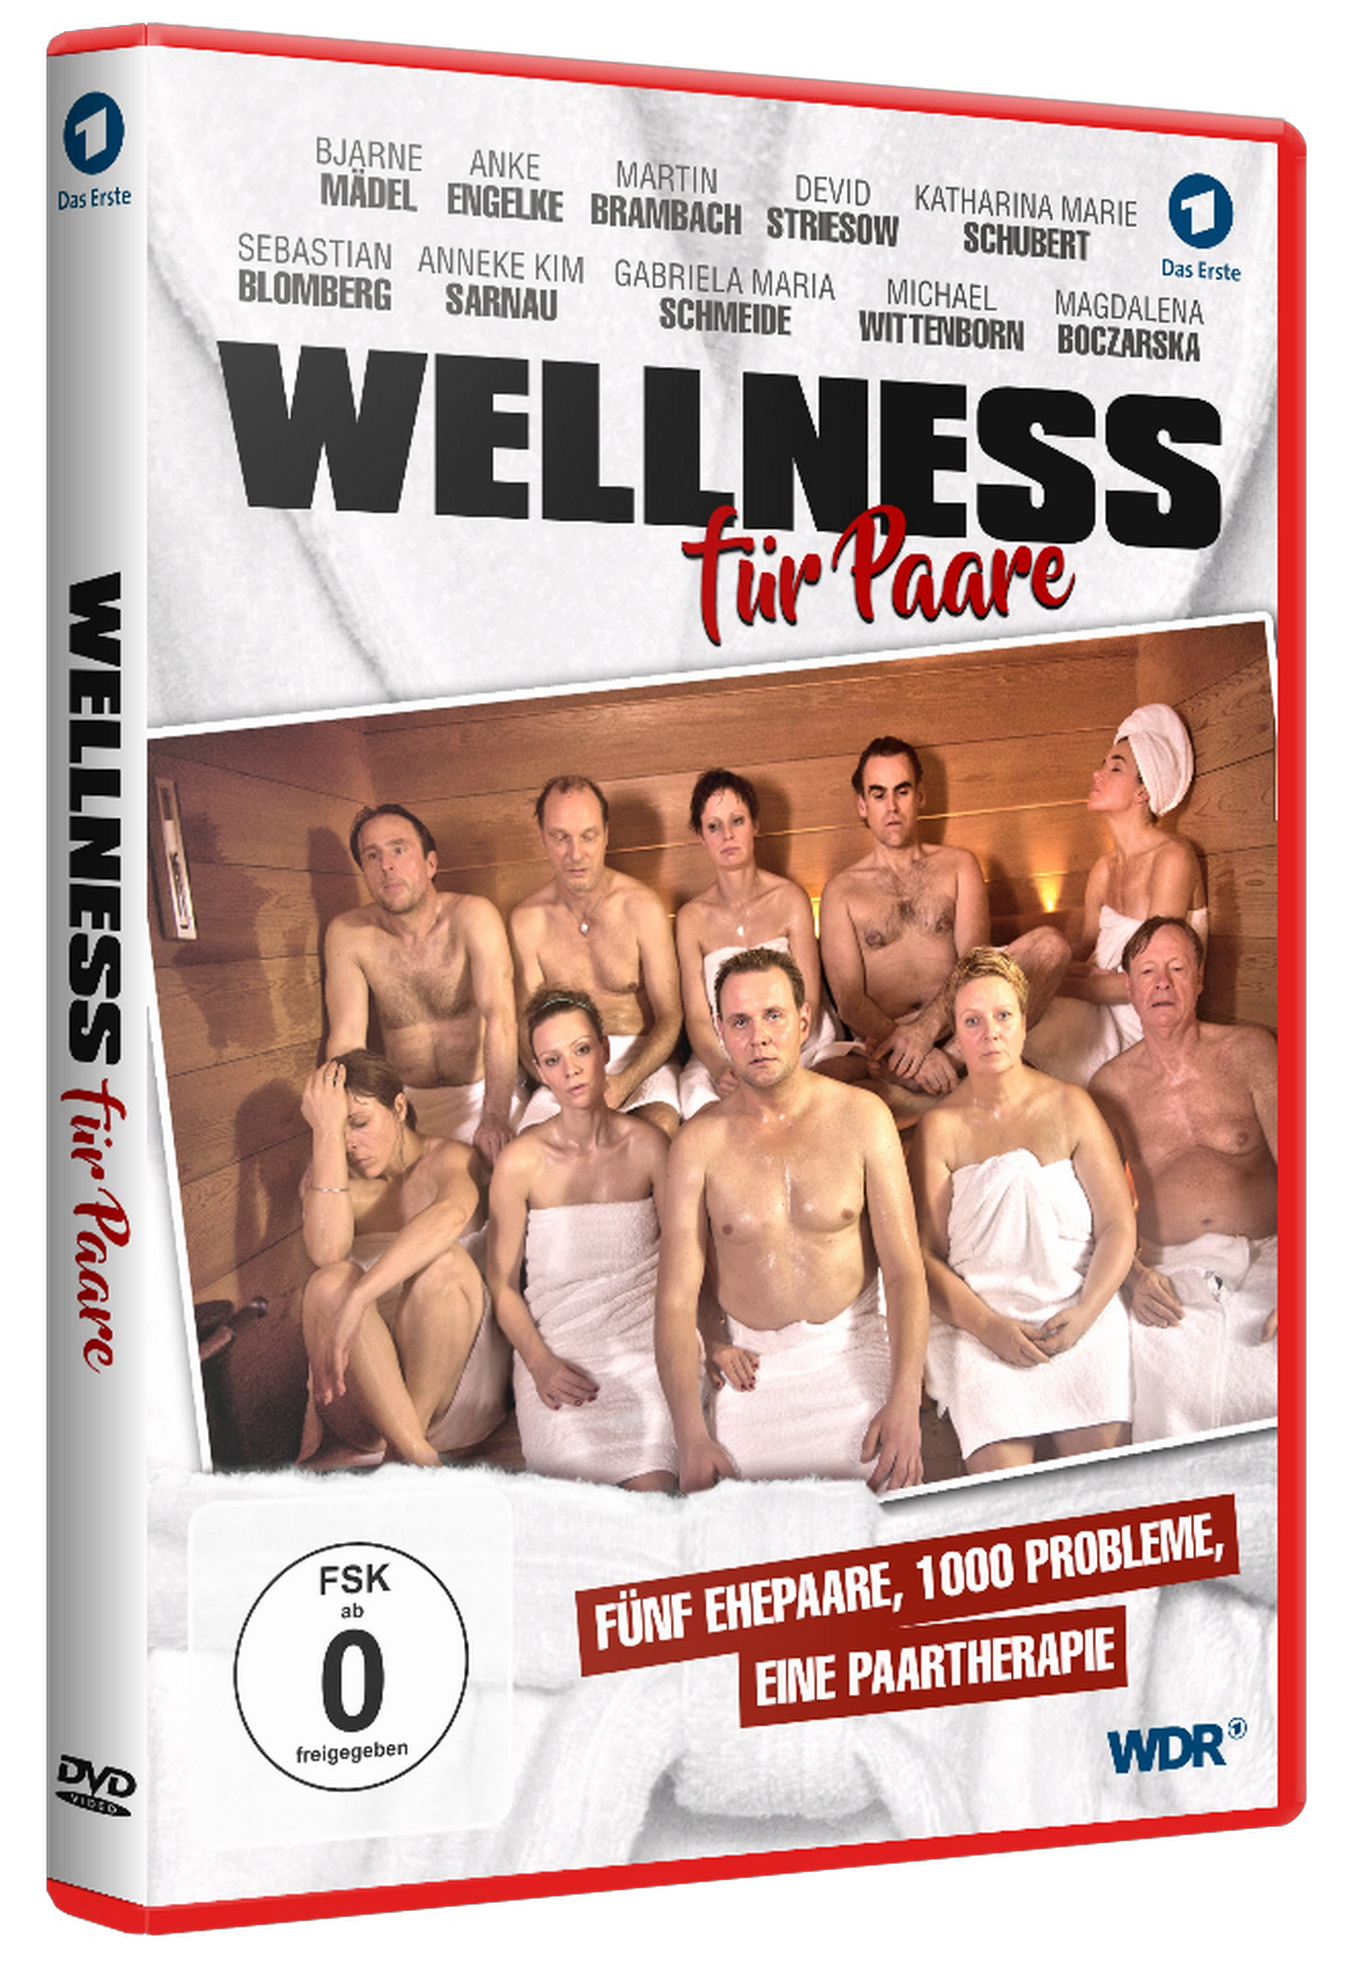 DVD Wellness Für Paare